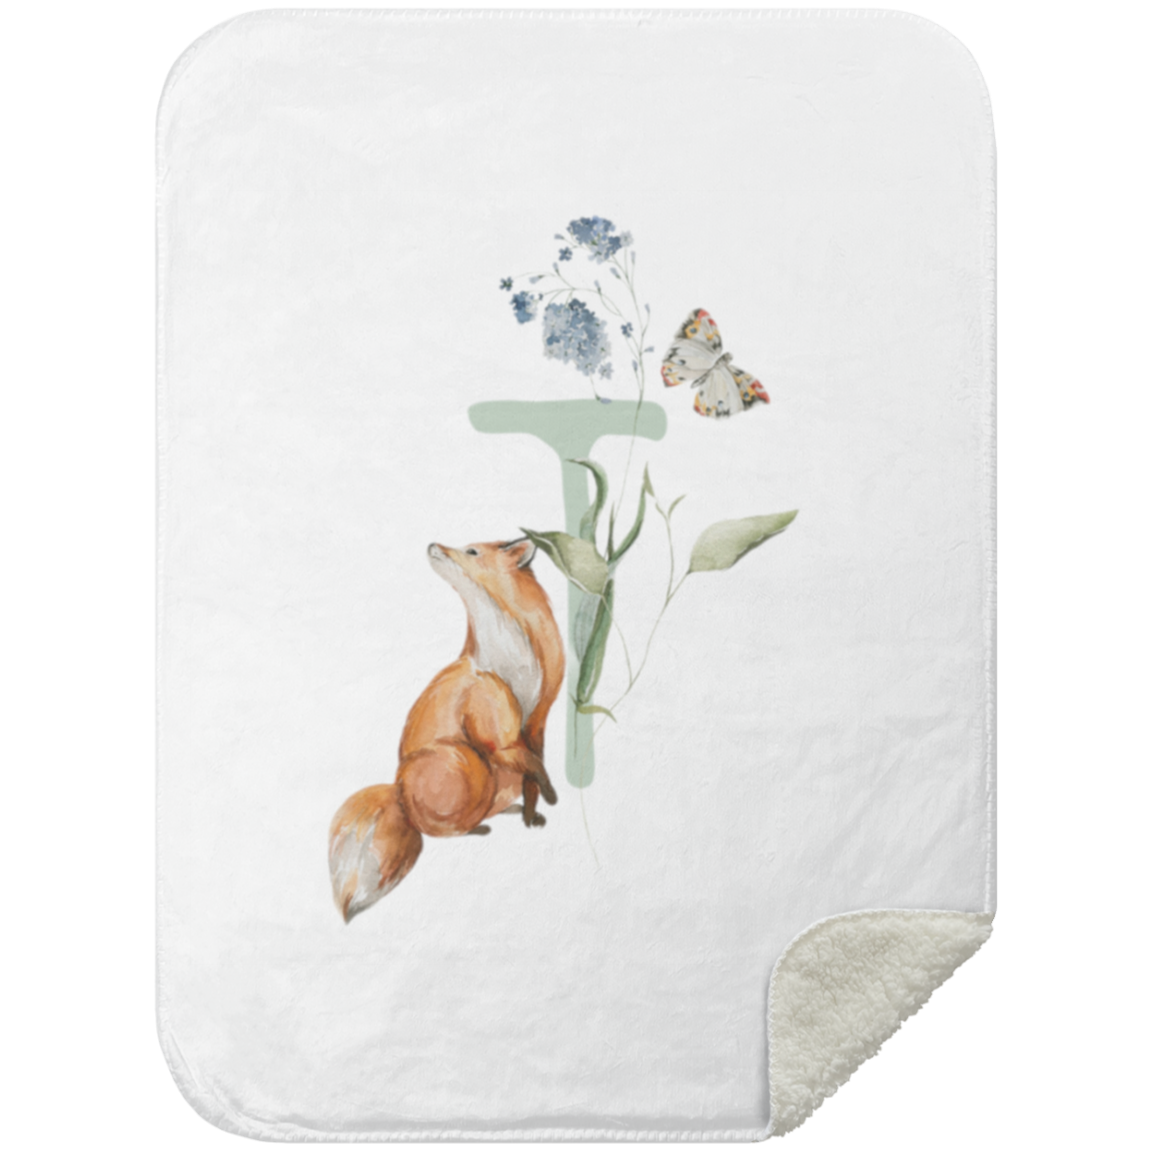 Een knusse, initiale Yumi Baby fleece deken versierd met een speelse illustratie van een vos die omhoog kijkt naar zwevende bloesems en een vlinder.